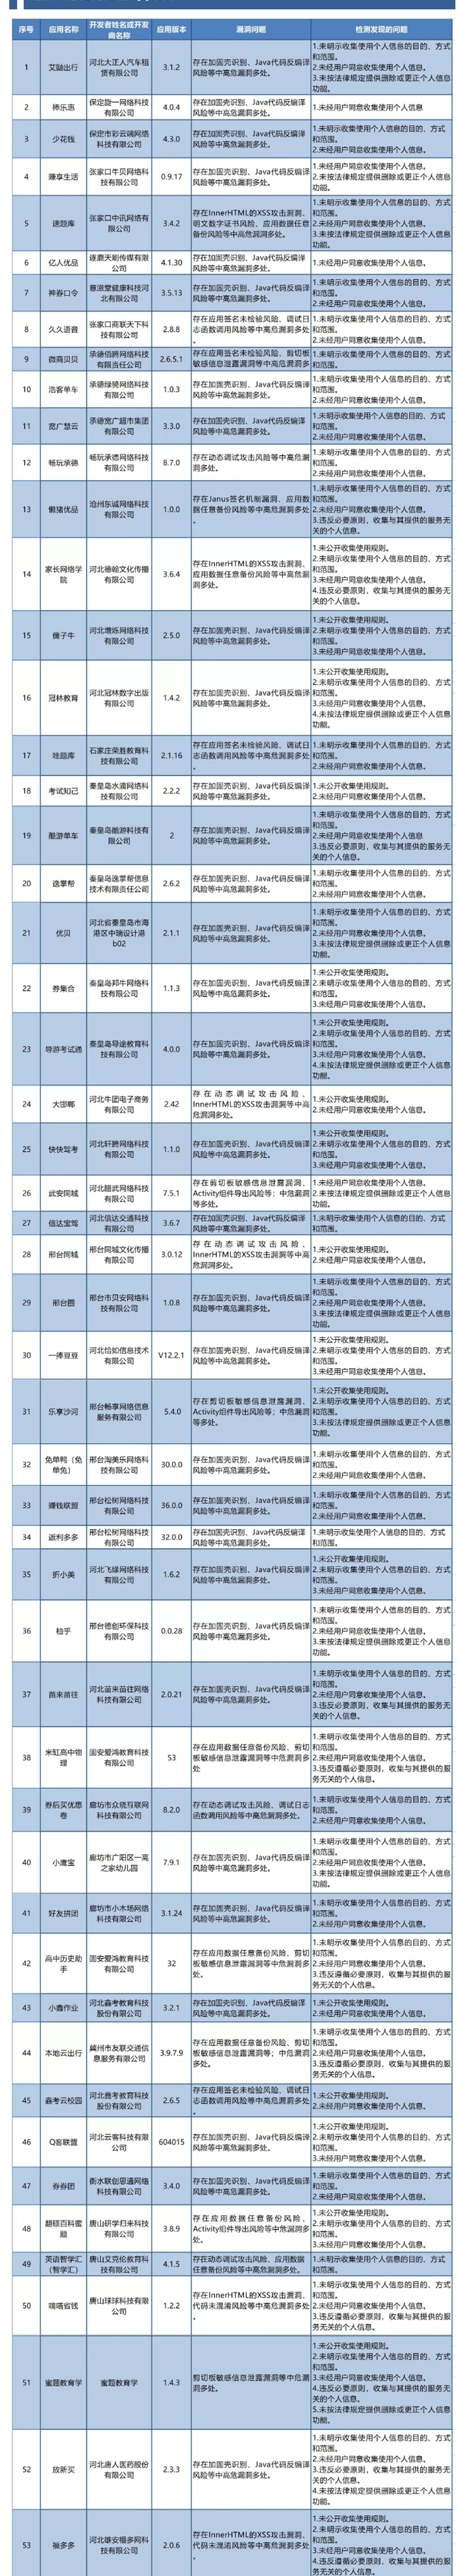 河北省委网信办通报53款存在安全风险和违法违规收集使用个人信息问题的App